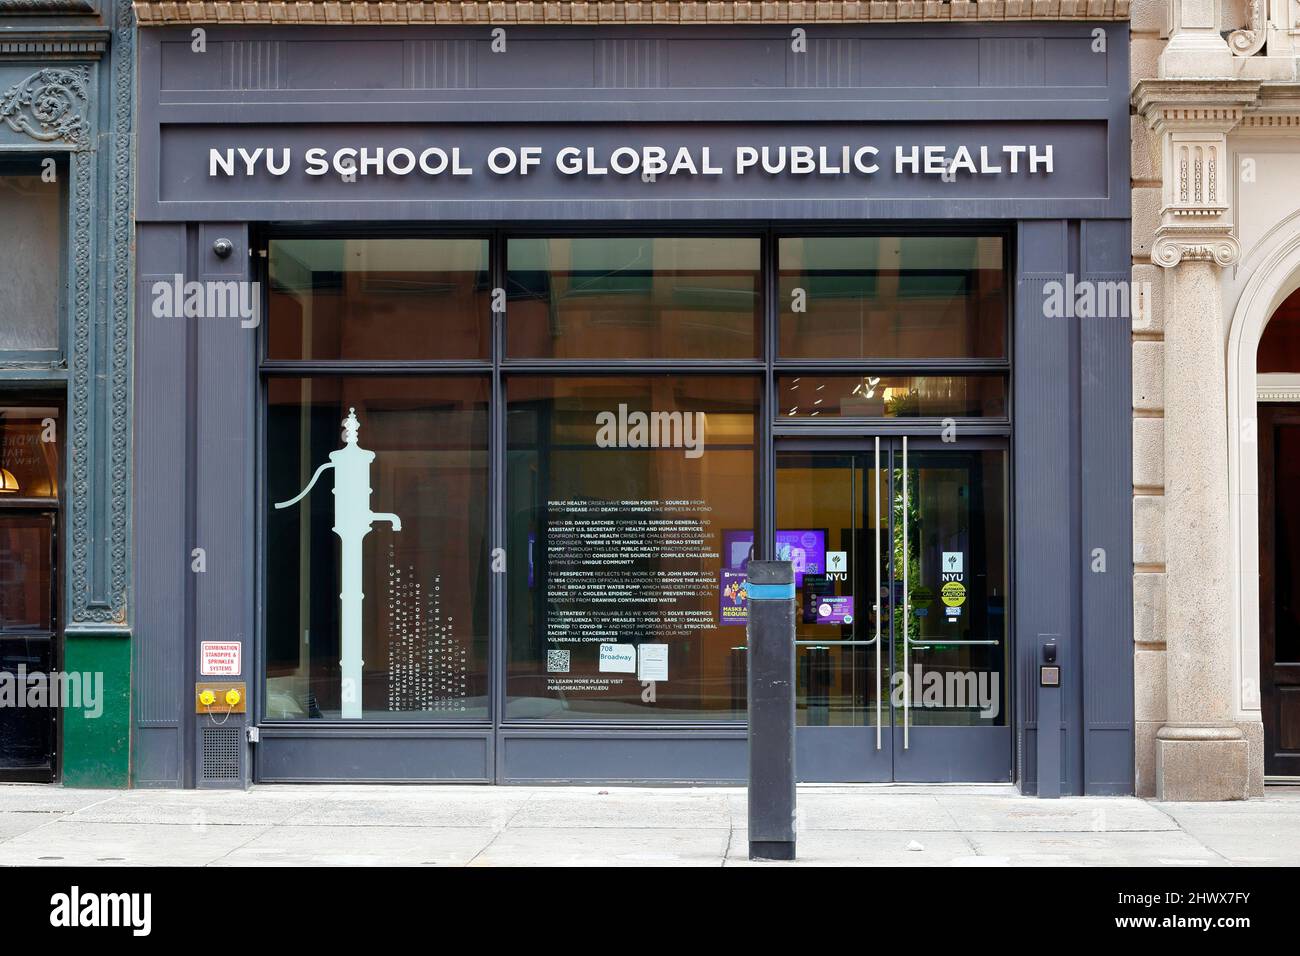 NYU School of Global Public Health, 708 Broadway, Nueva York, NY. Escaparate exterior de una escuela de posgrado de salud pública y epidemiología. Foto de stock